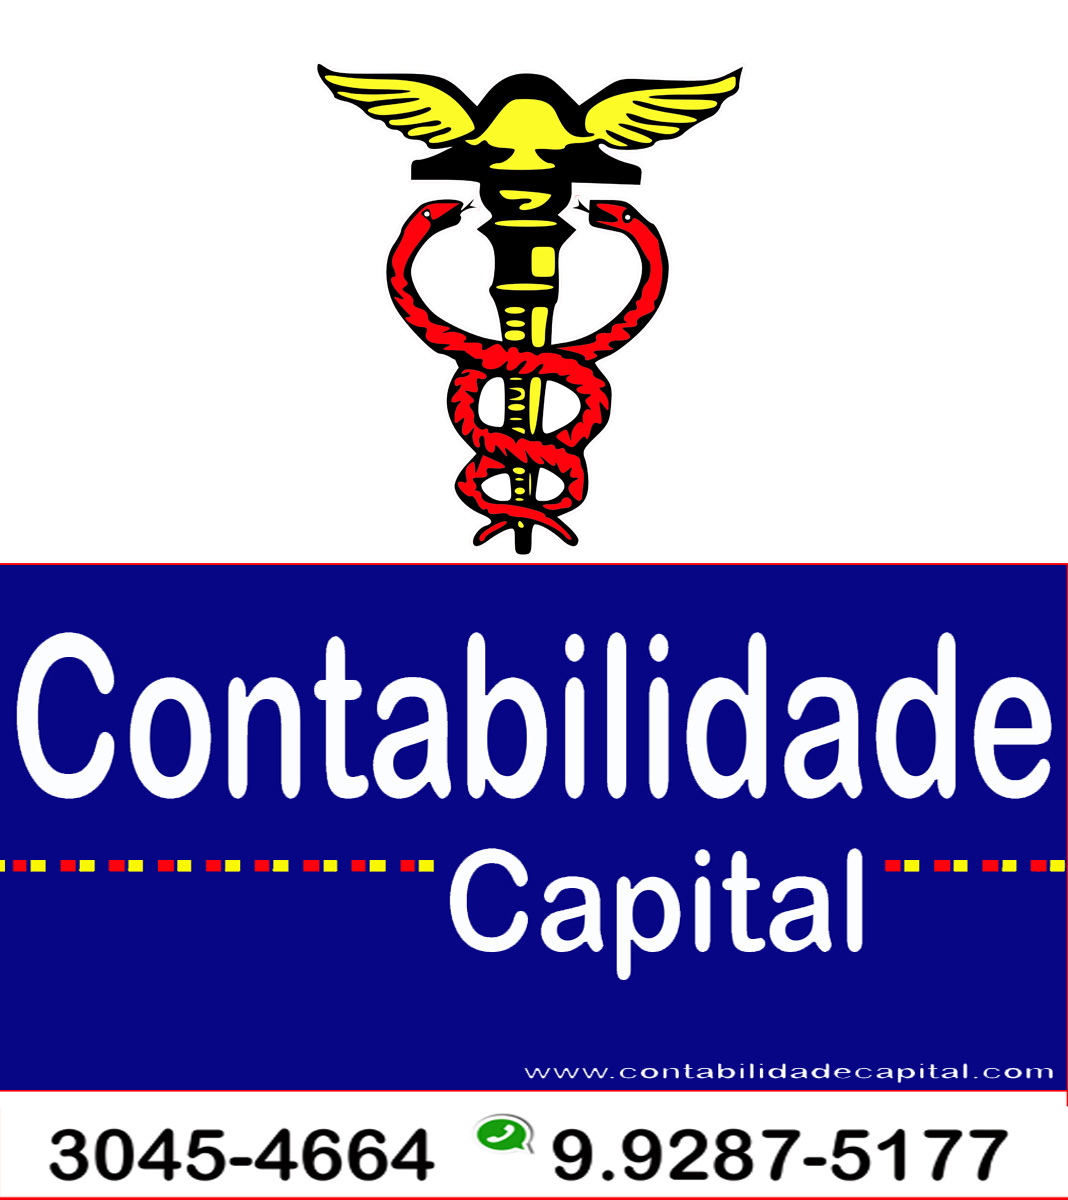 CONTABILIDADE CAPITAL - Contabilidade - Escritórios - Brasília, DF